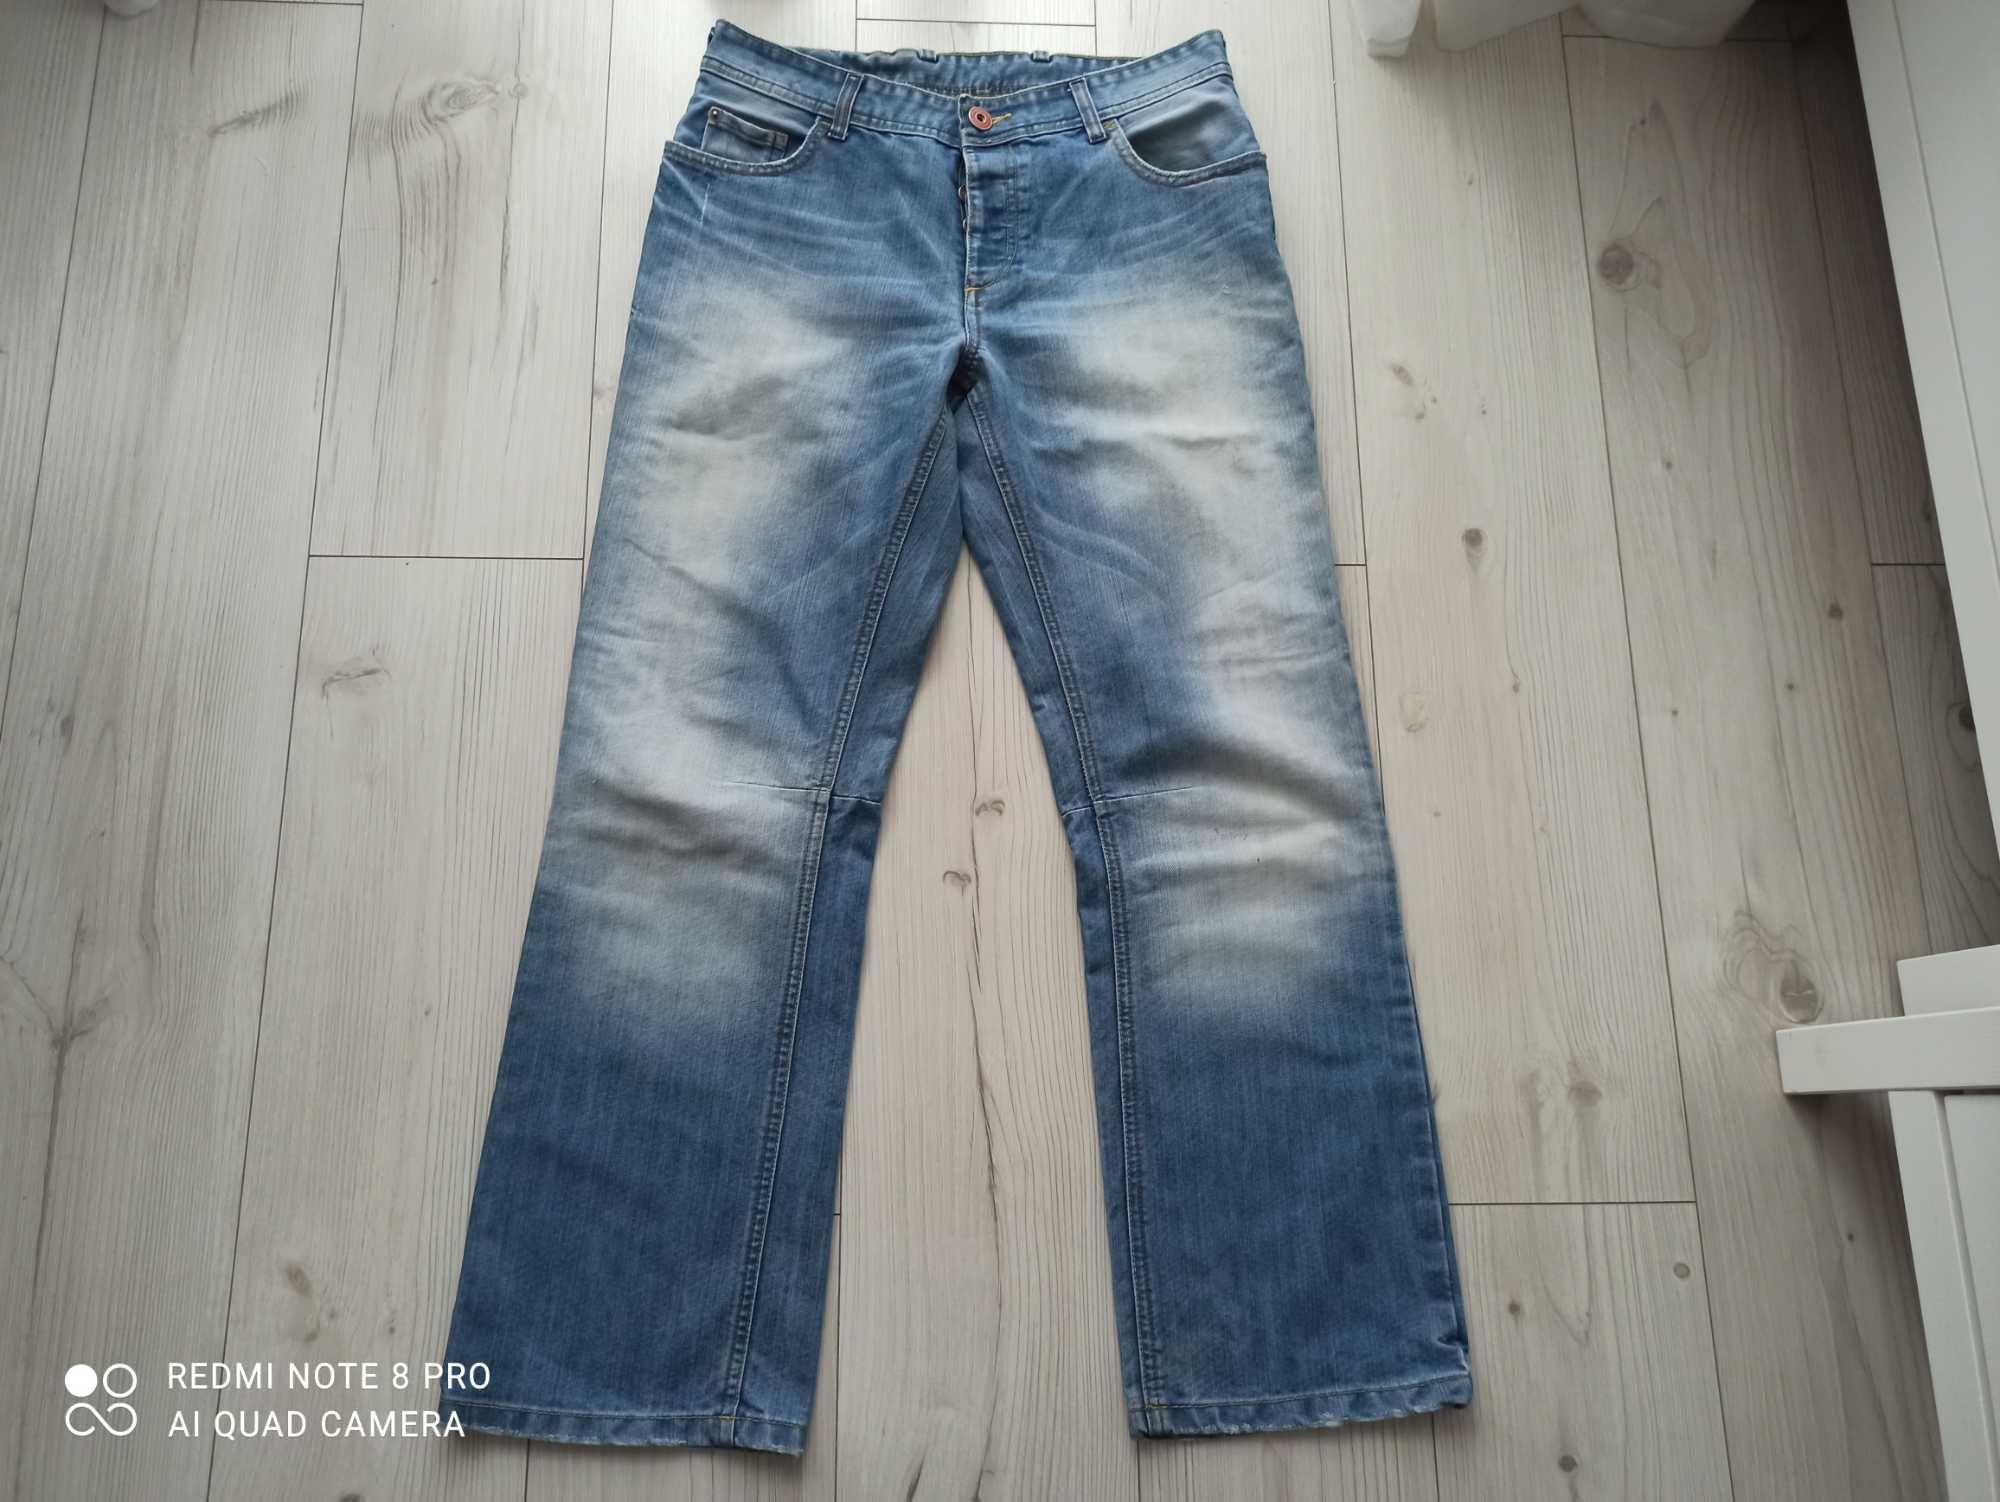 Spodnie męskie jeans Petroleum, W 32 L 32